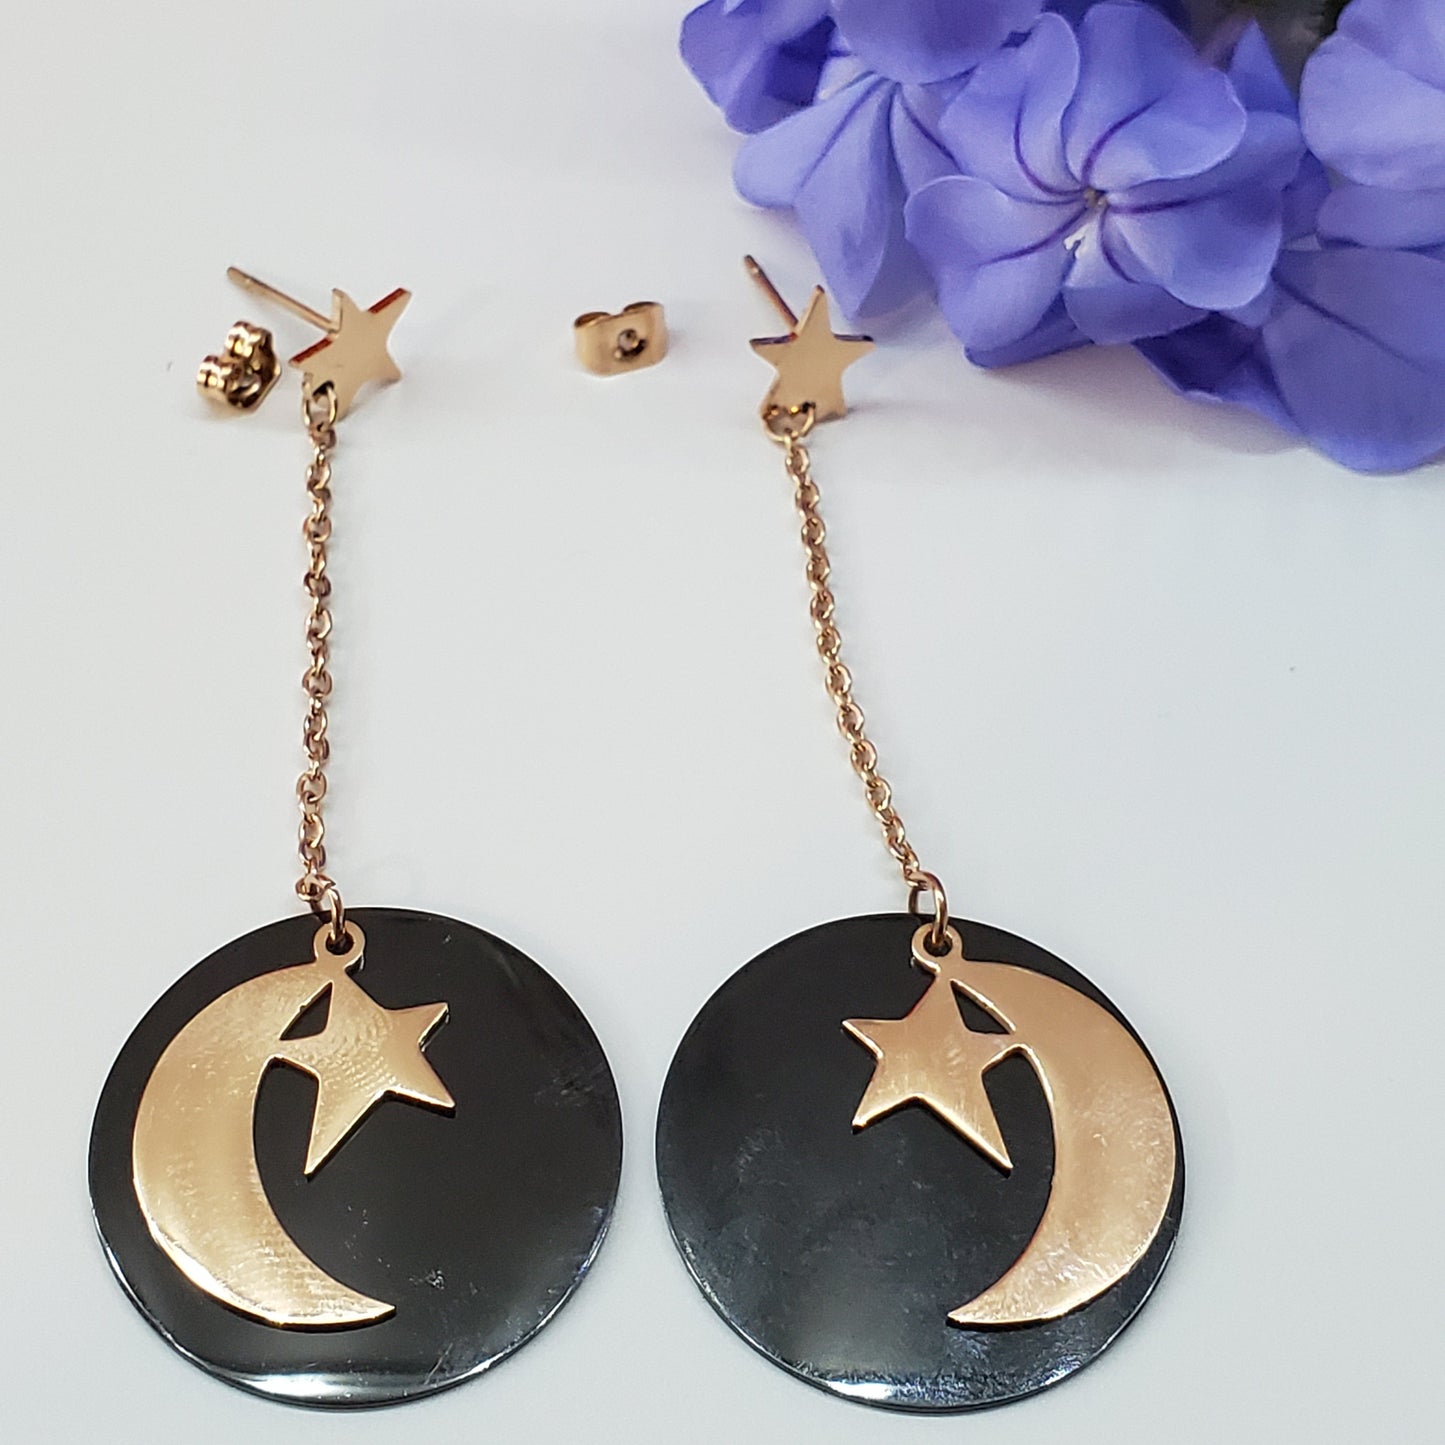 Earrings - Stainless Steel. 18K Gold Plated. Long Earrings - Moon - Star. *Premium Q*